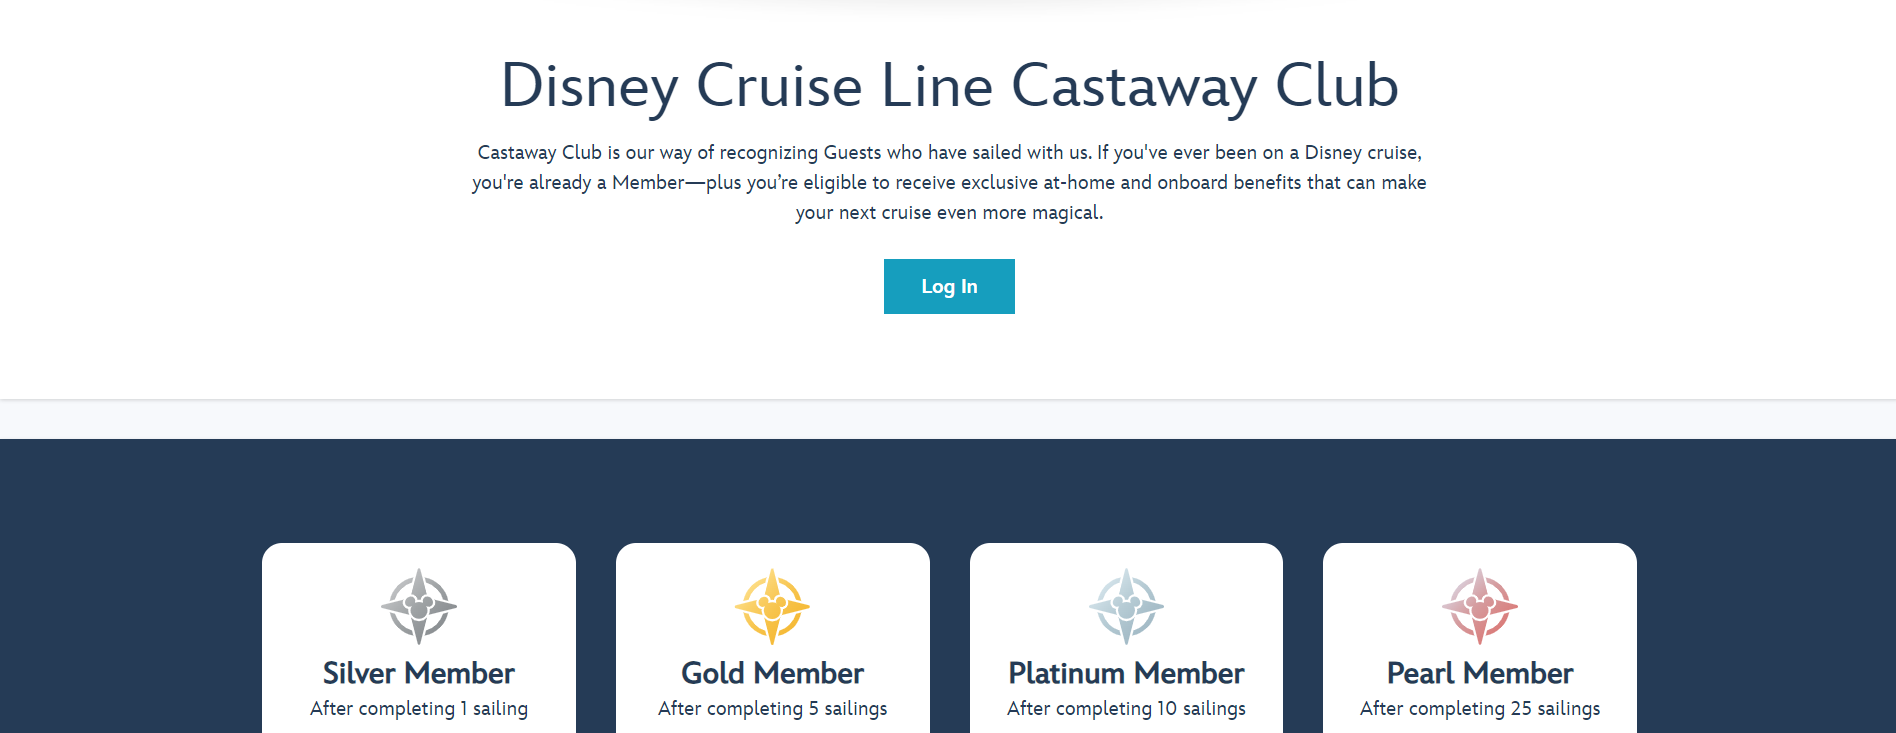 Castaway Club by Disney Cruise Line